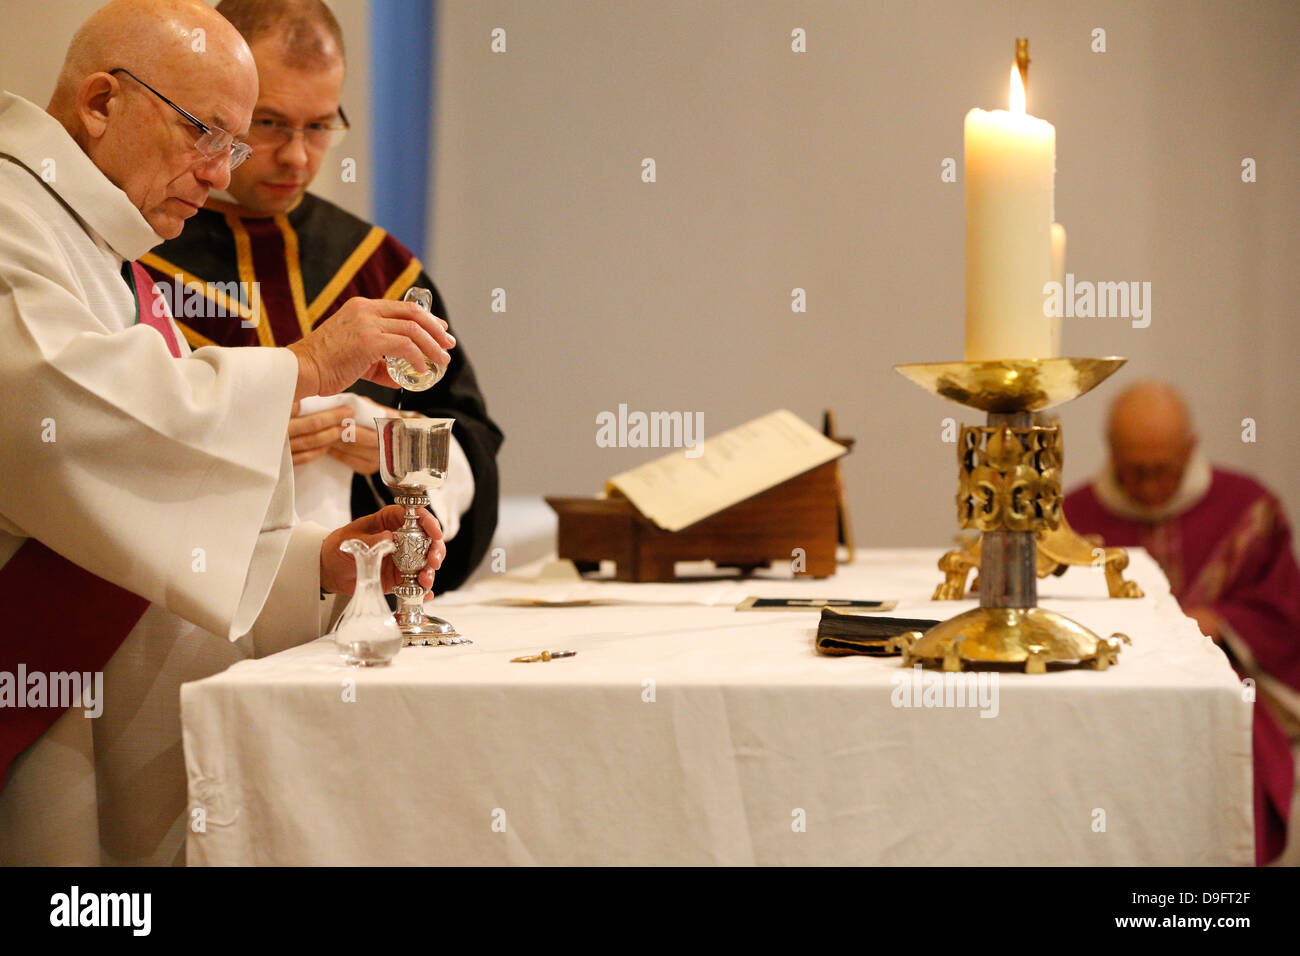 Eucharistic celebration, St. Louis church, Villemomble, Seine-St. Denis, France Stock Photo